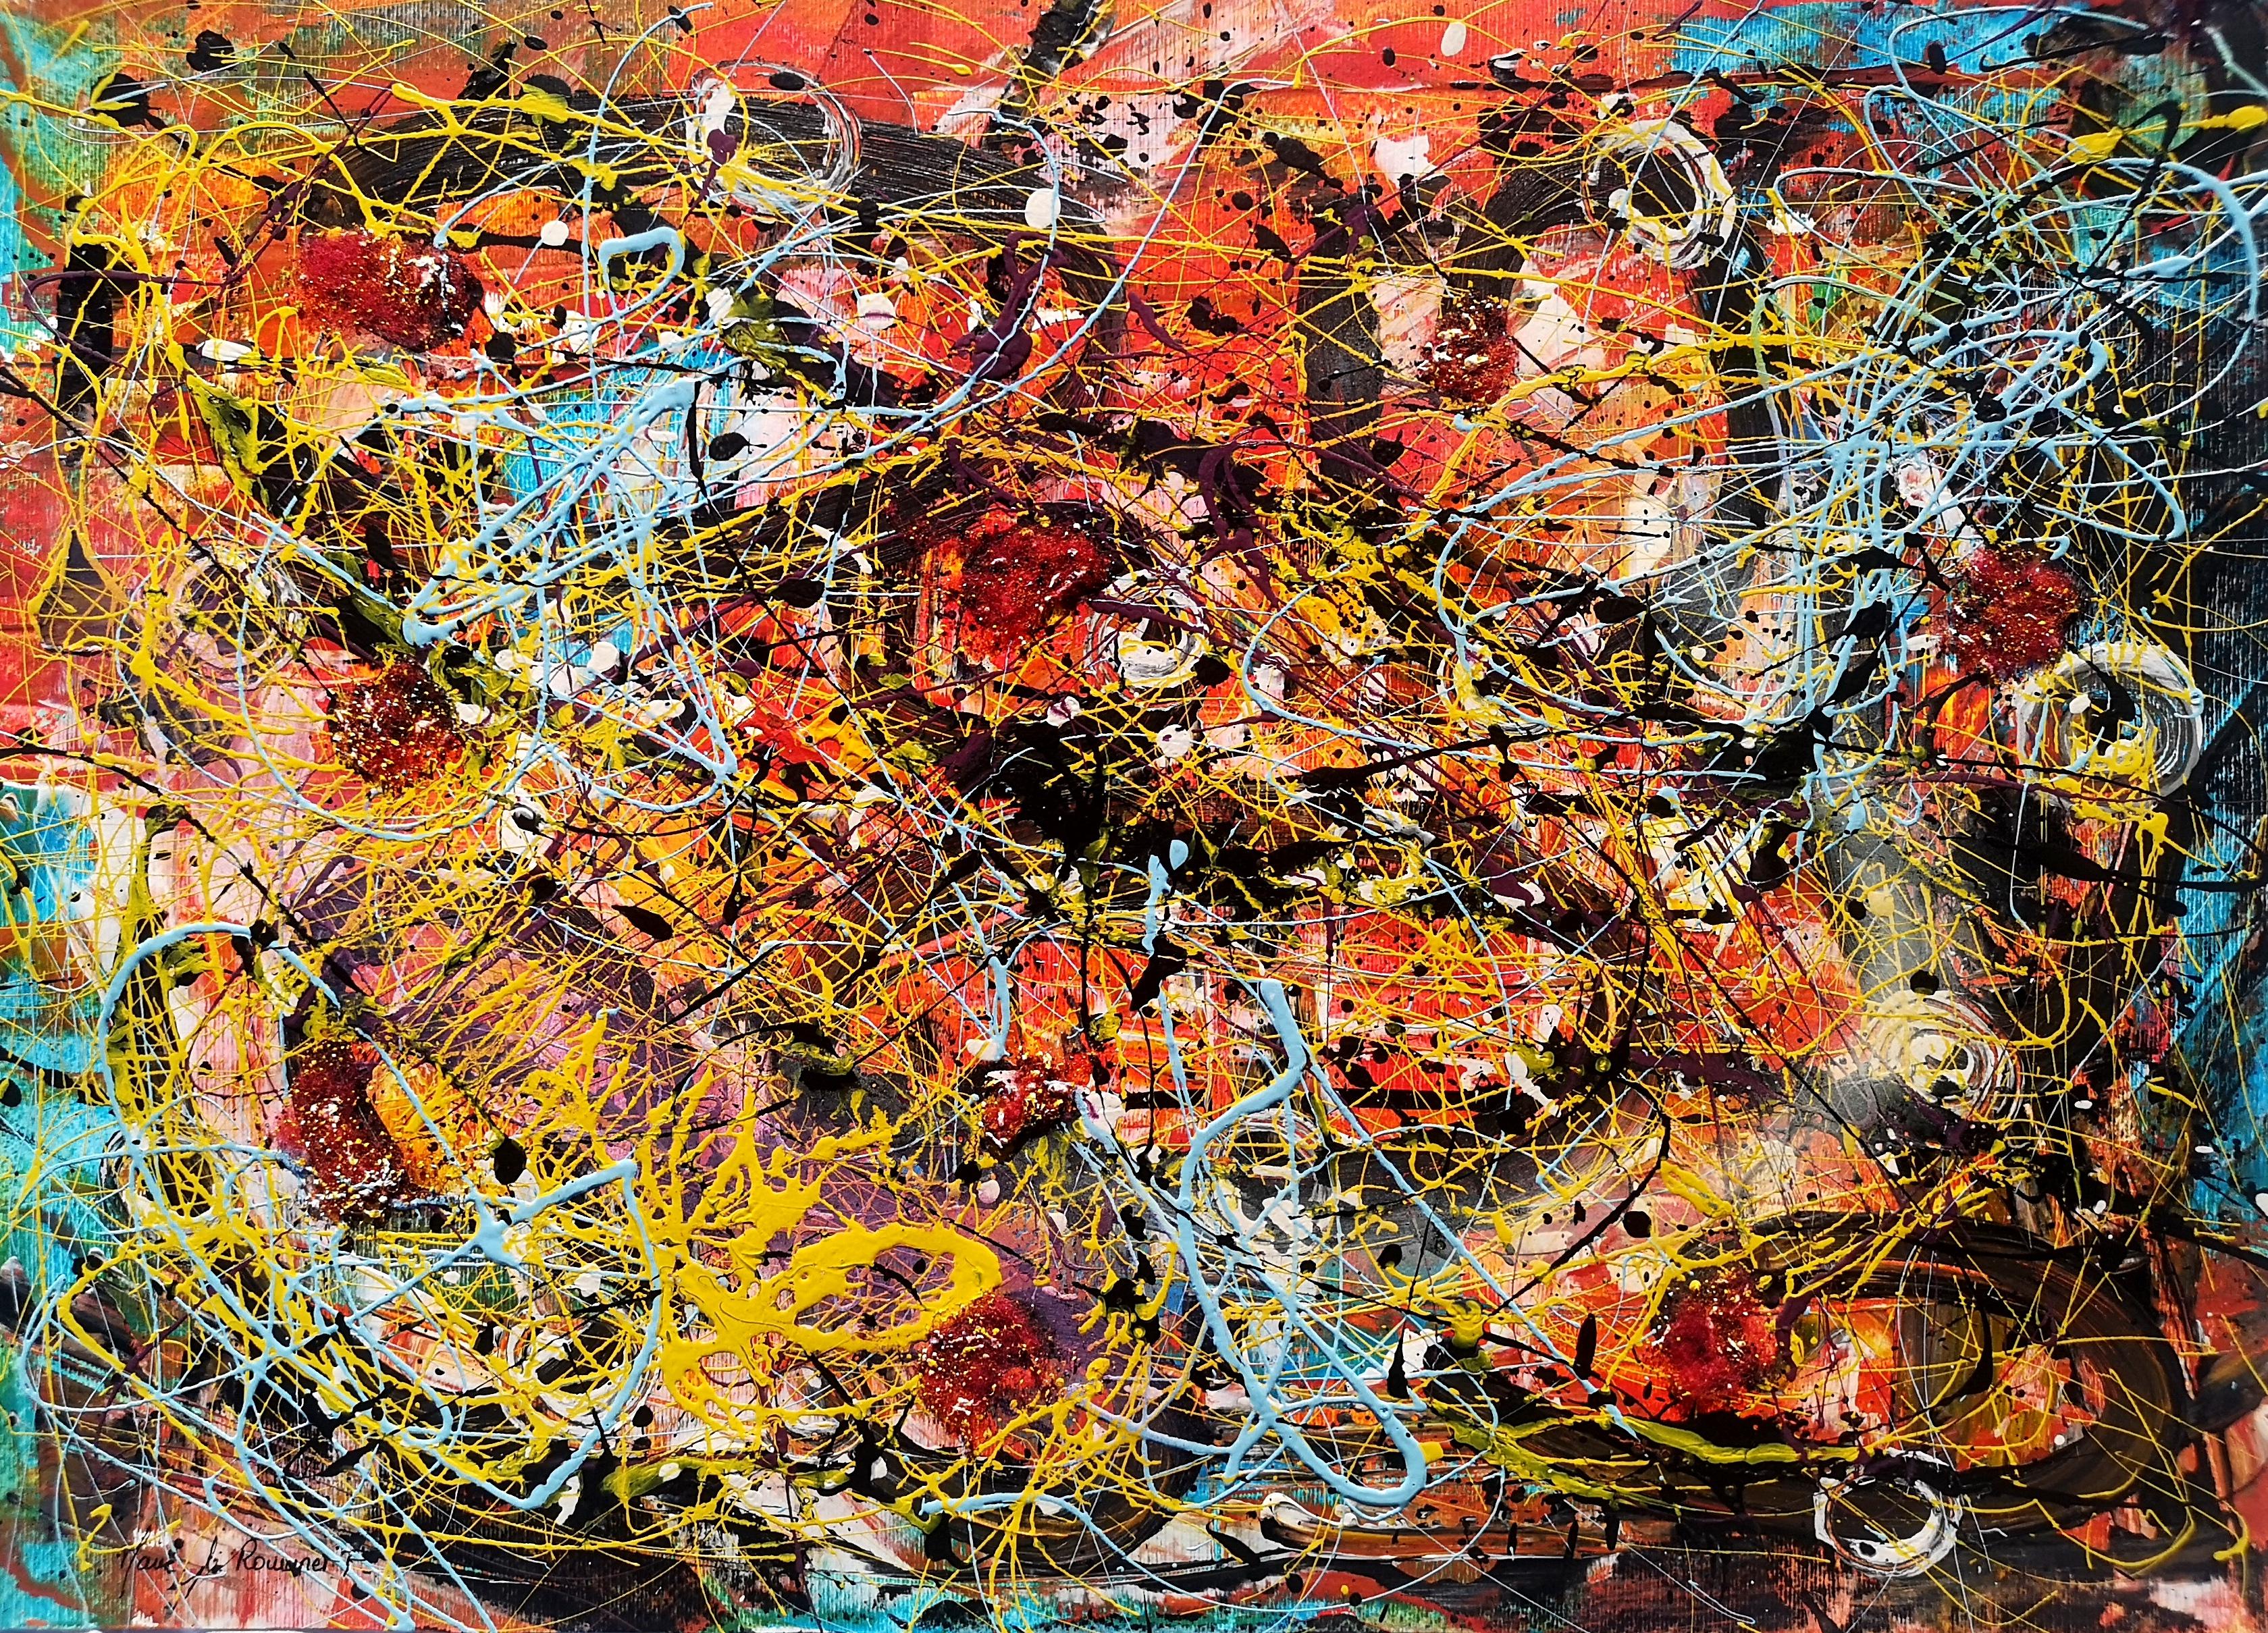 "L'AU DELA DES MOTS"  Pollock style